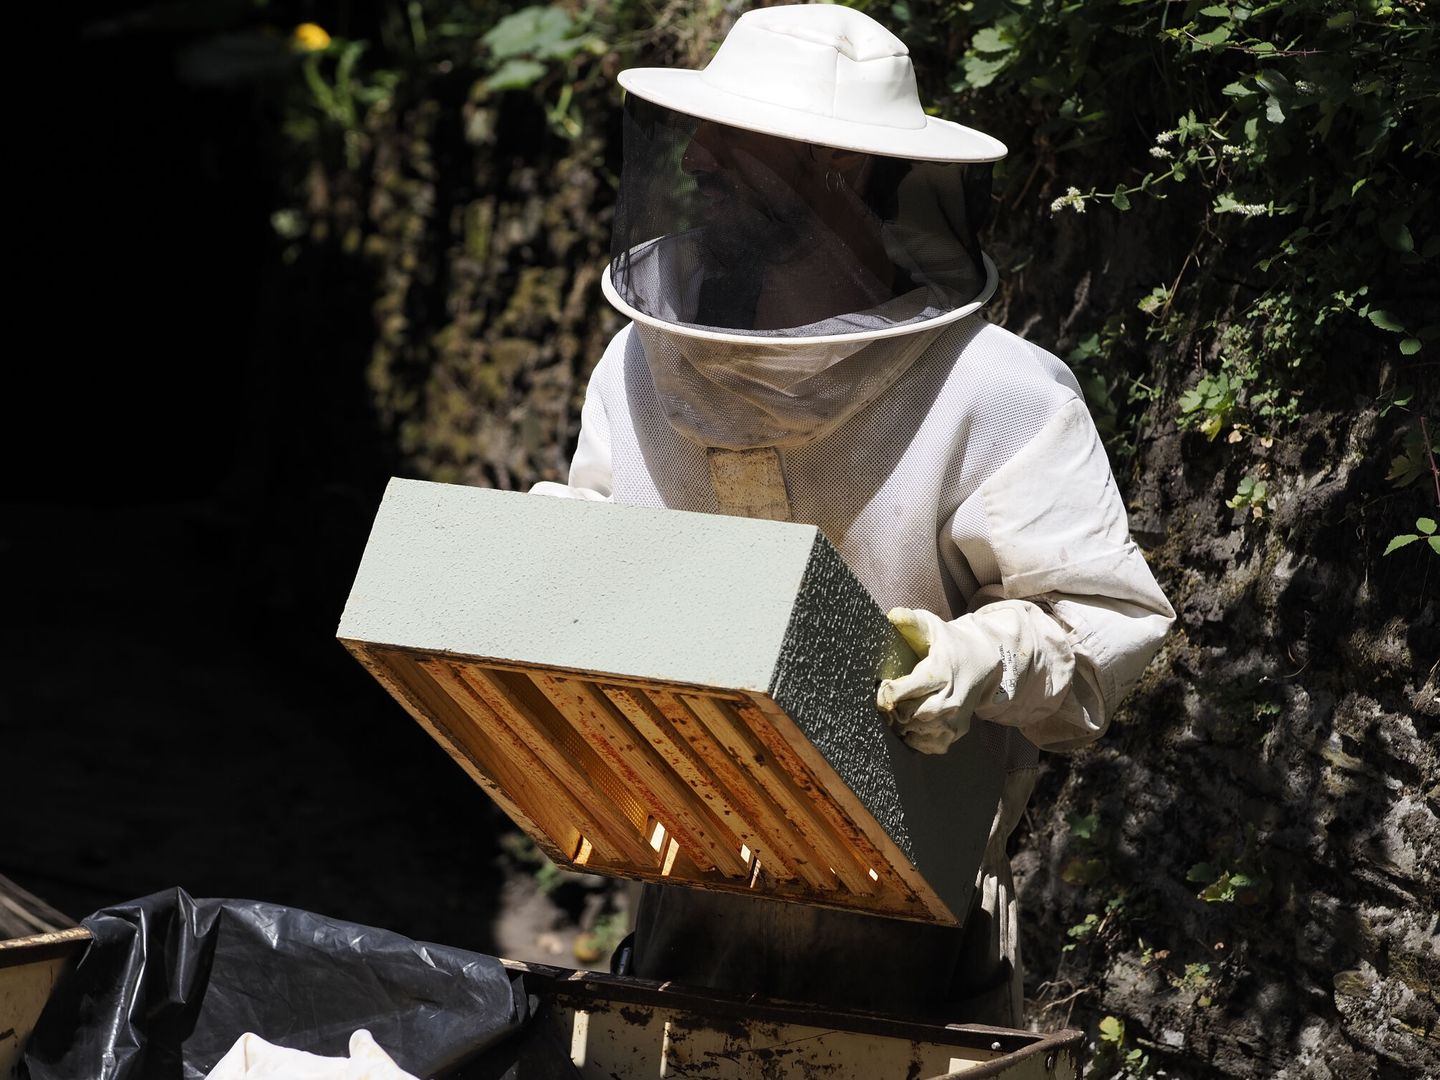 La extracción de la miel de los panales de abejas y su producción se ven afectadas por los incendios forestales y la aparición de la avispa velutina. (EFE/Eliseo Trigo)